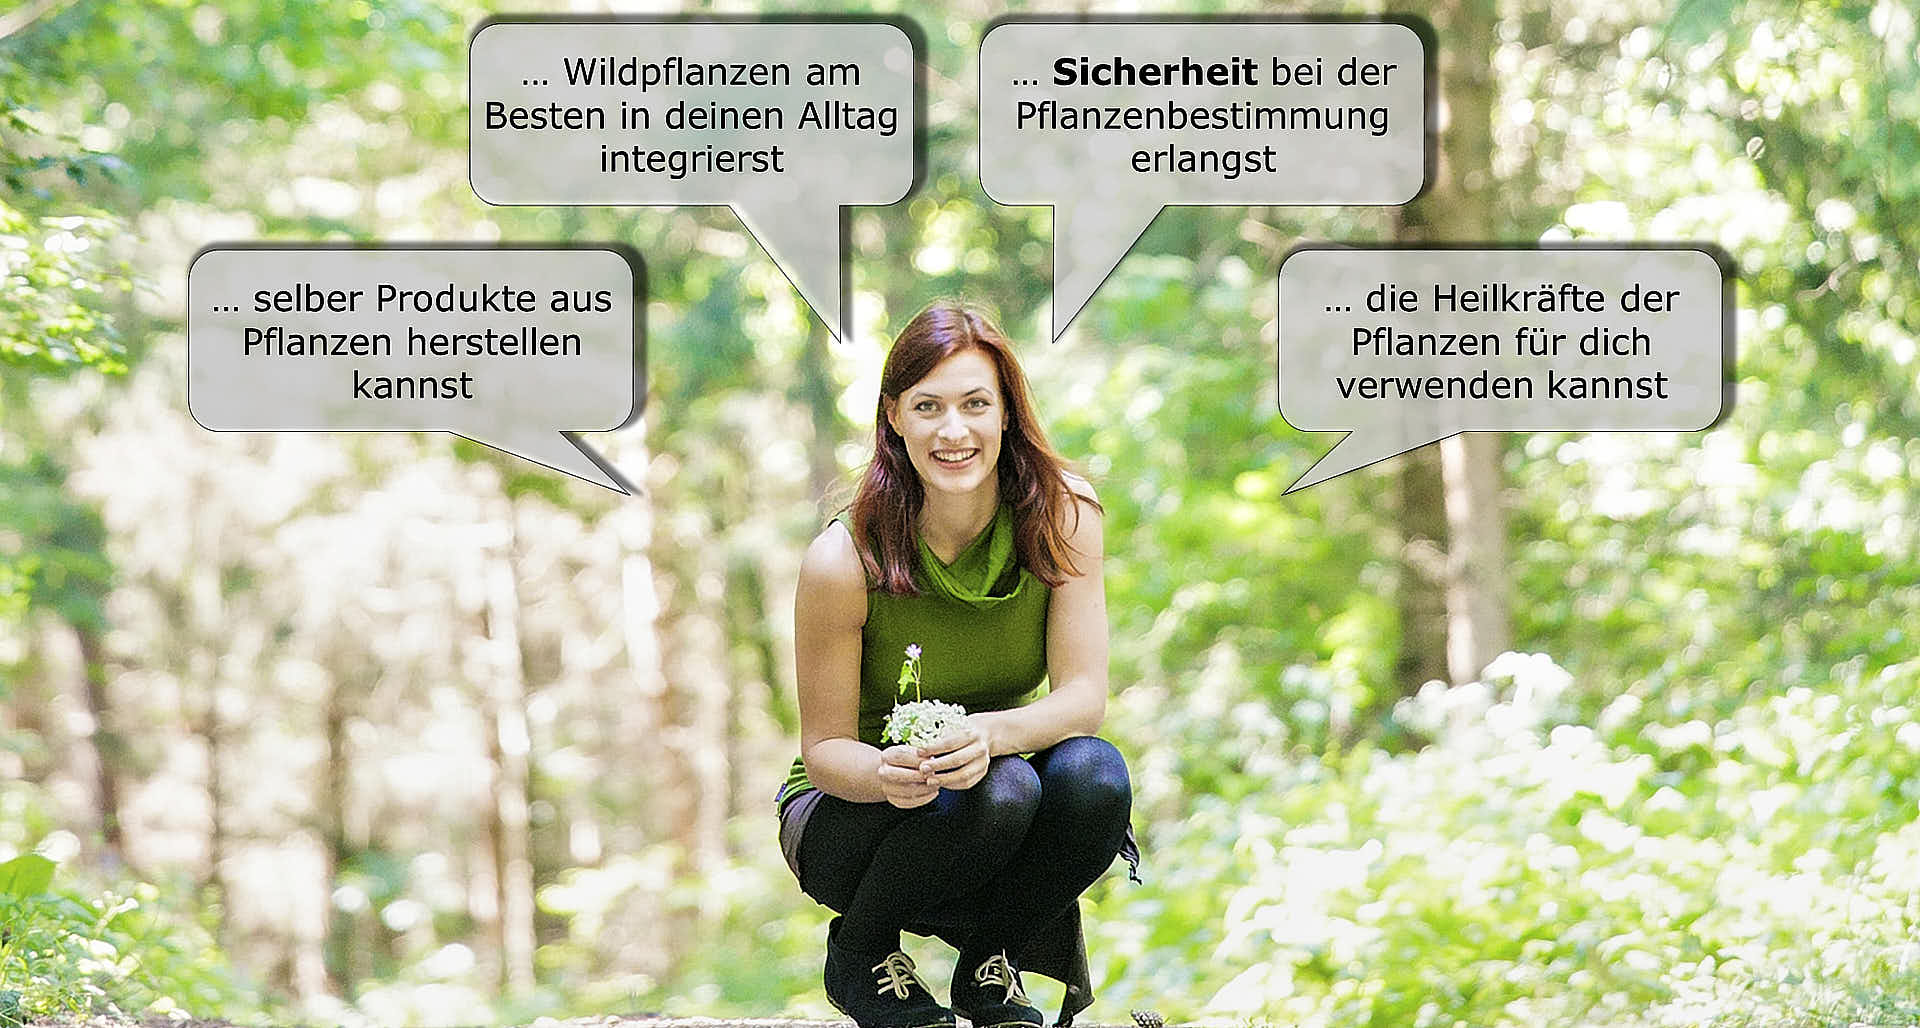 Wild Pflanzen Kräuterwanderung Christine Grasl 3